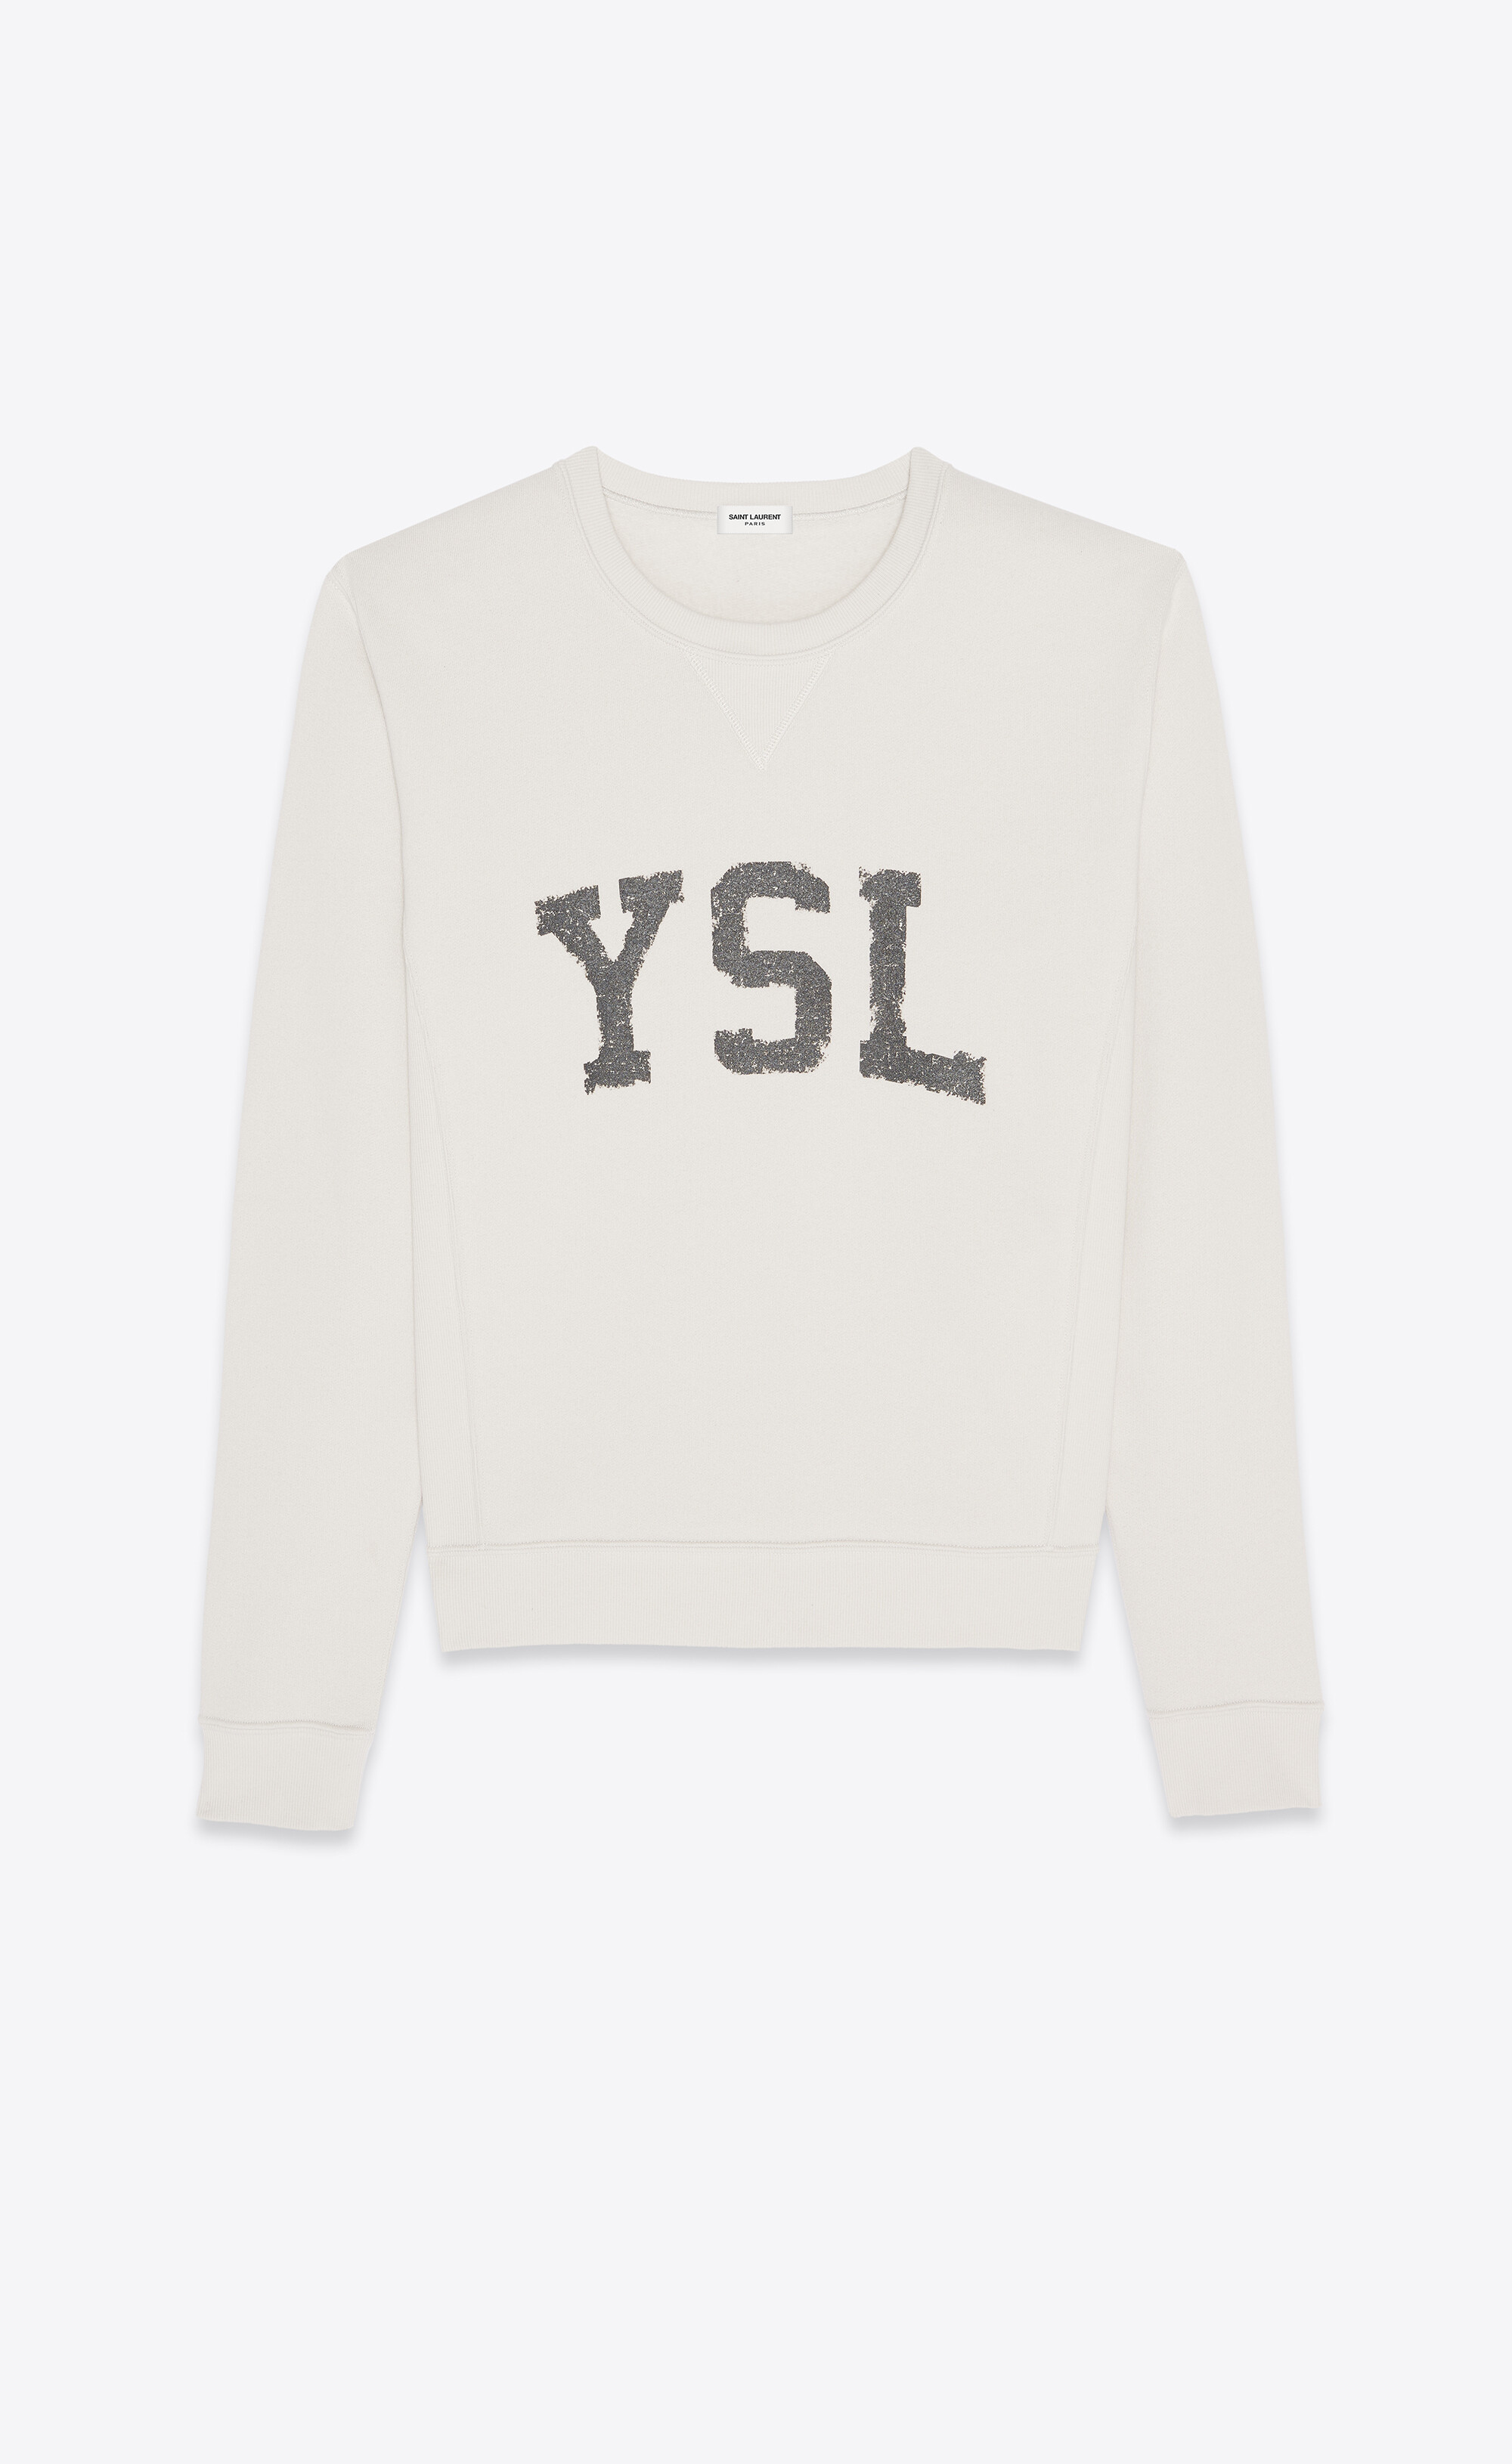 Clothing Mens Clothing Hoodies & Sweatshirts Sweatshirts Vintage YSL Yves Saint Laurent Sweatshirt Jumper 